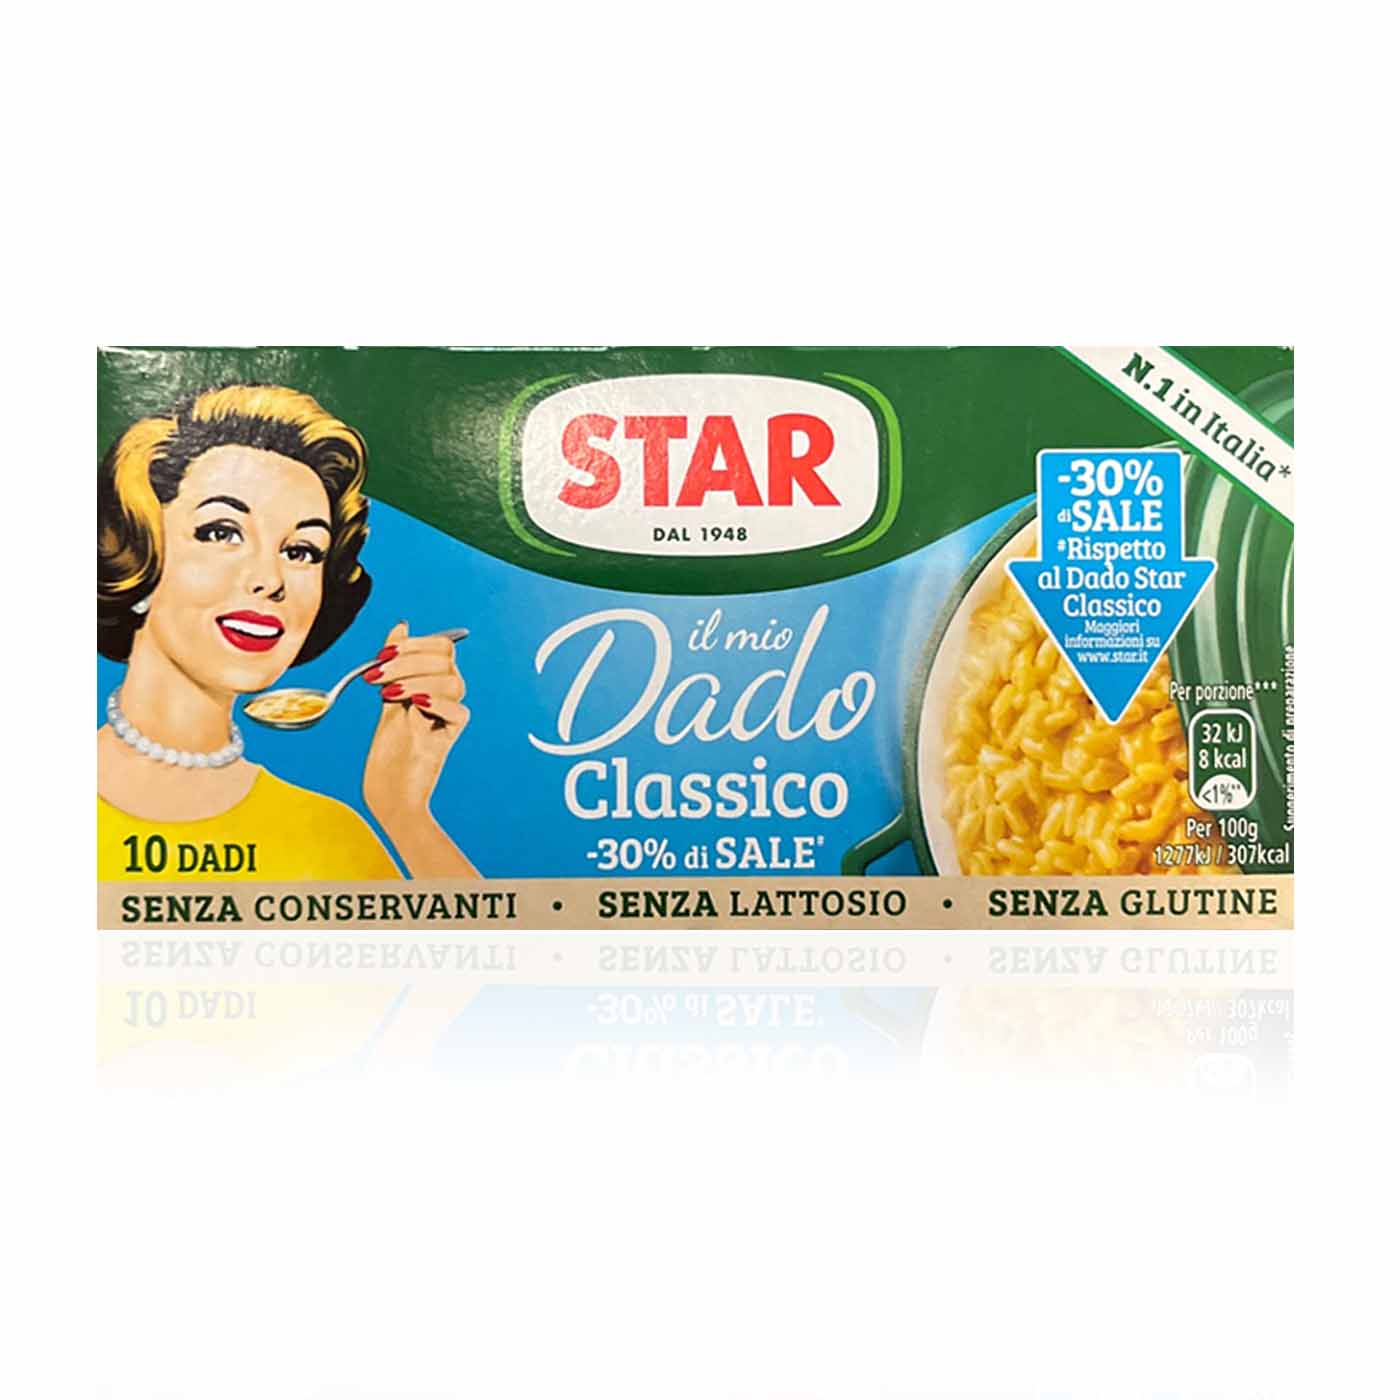 STAR Dado classico - Brühwürfel weniger Salz - 0,1kg